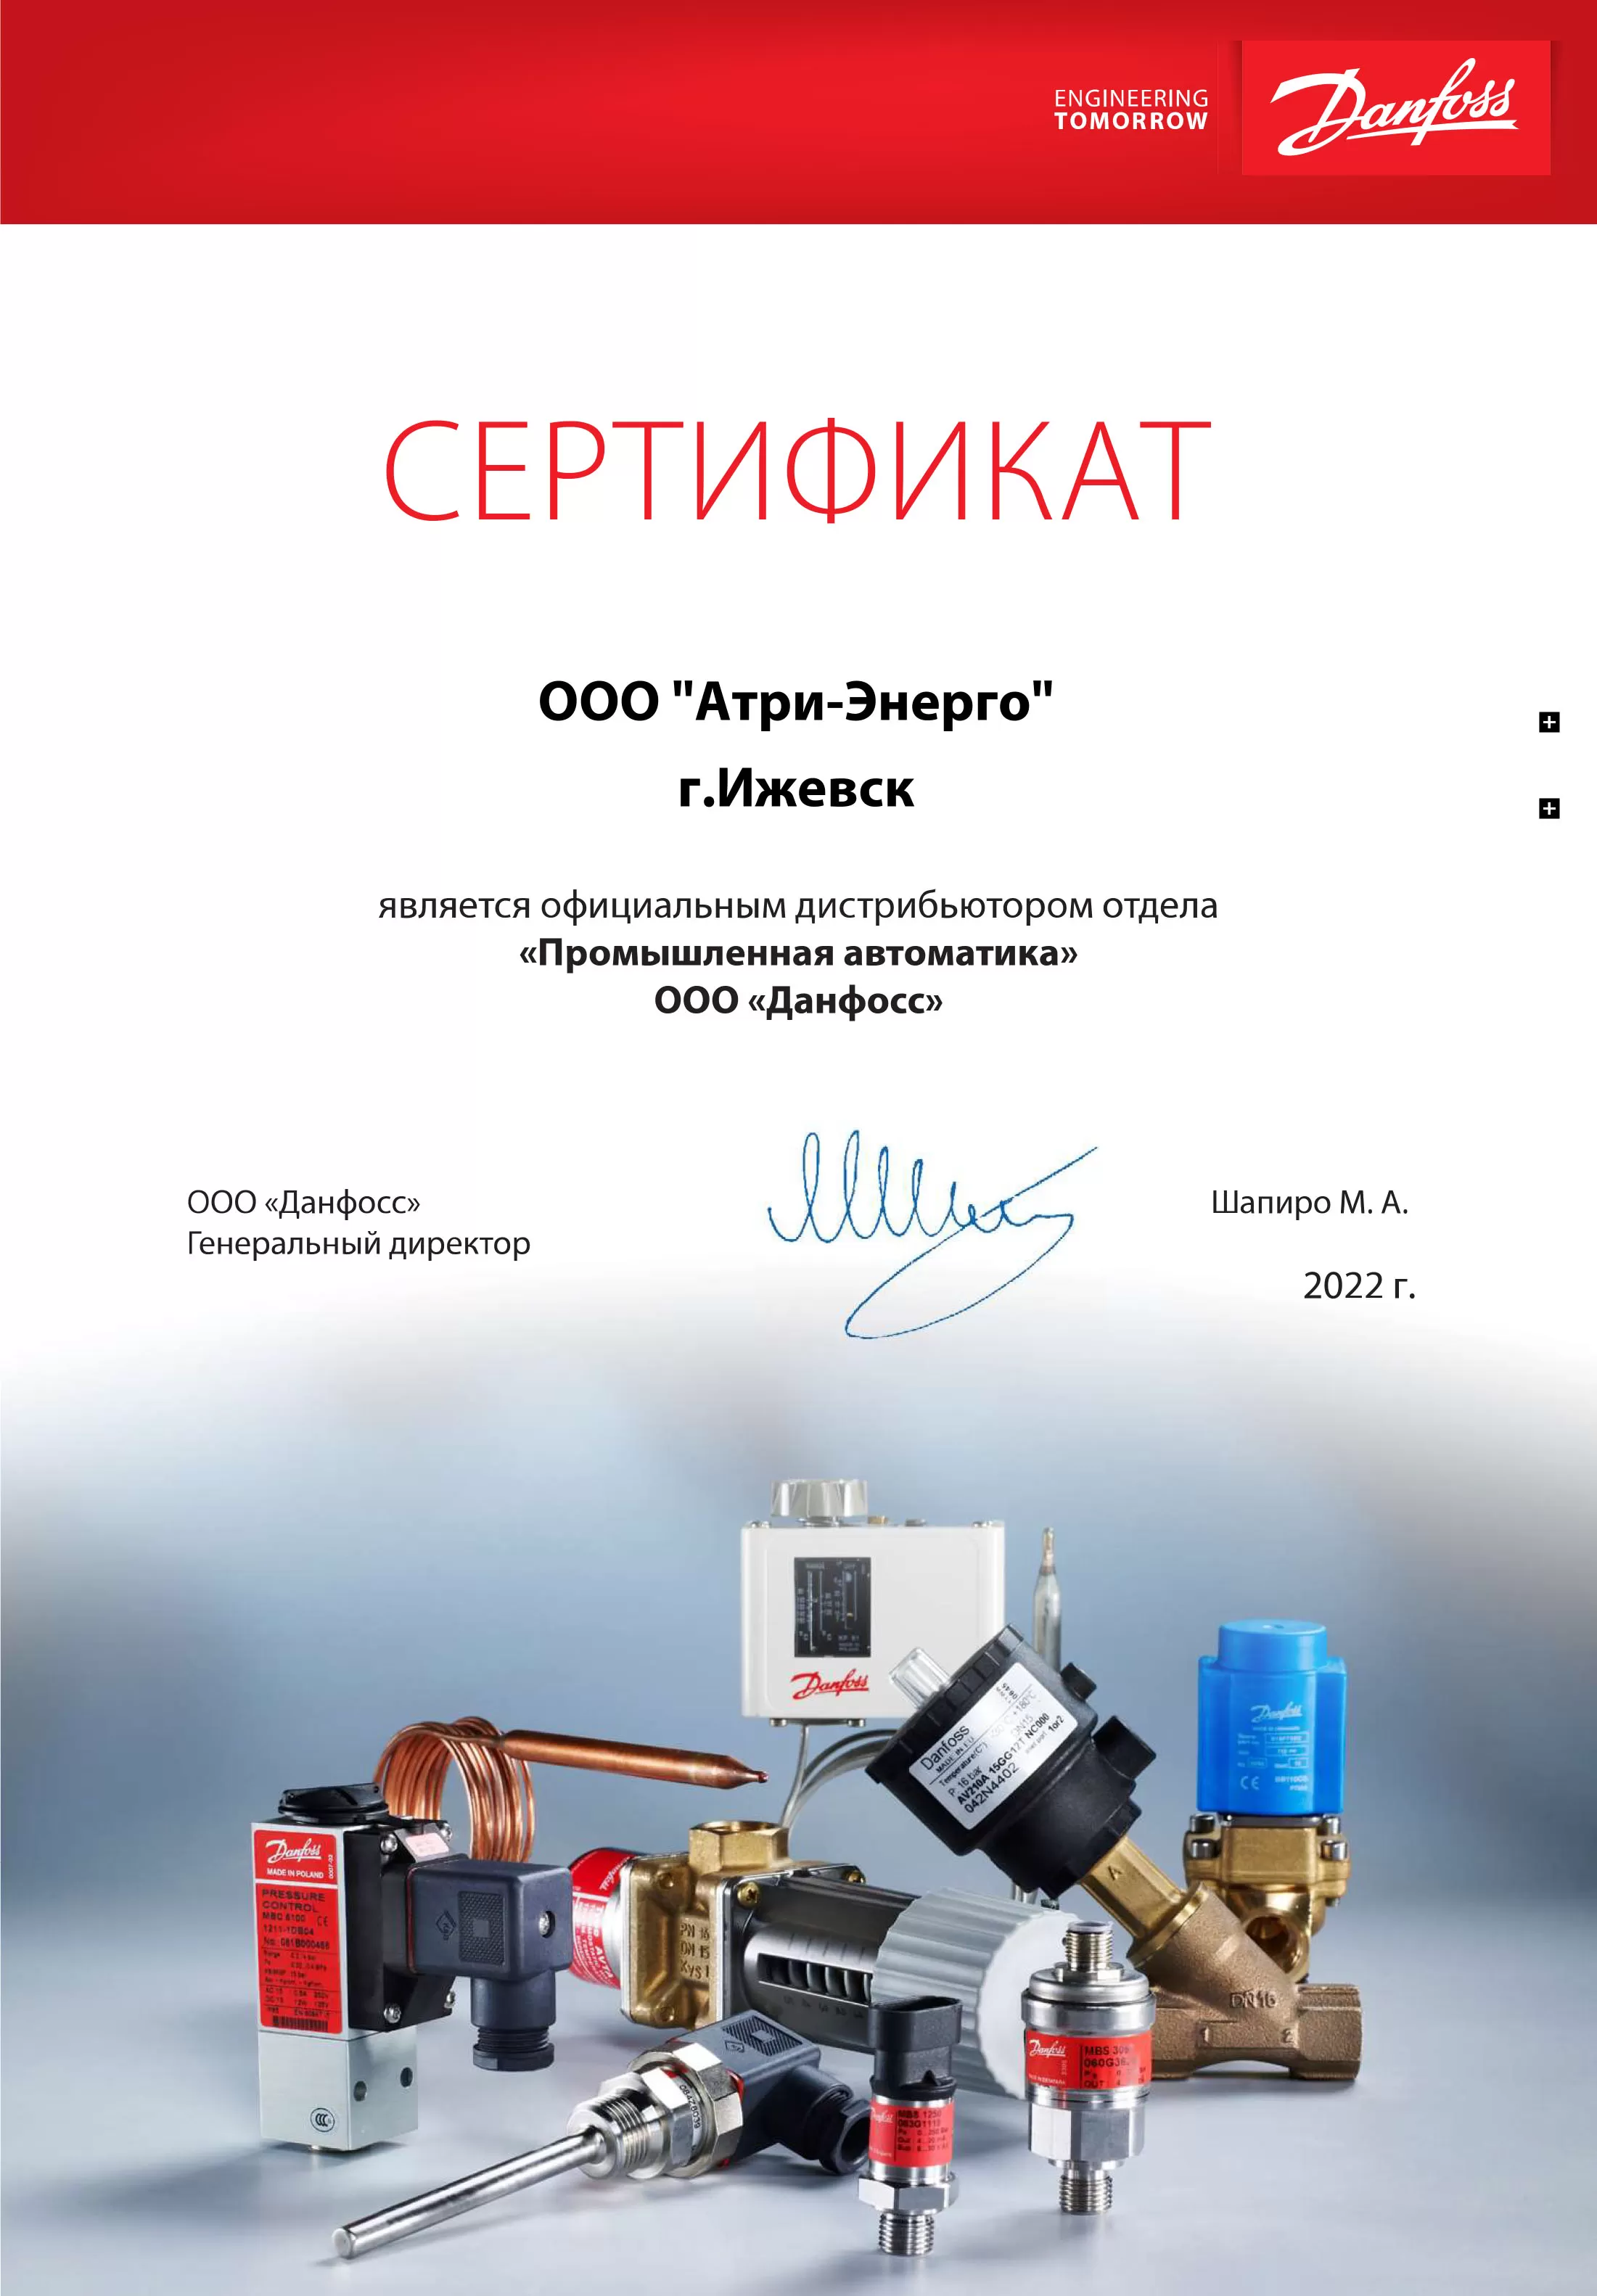 Сертификат дистрибьютора промышленной автоматики ООО «Данфосс»